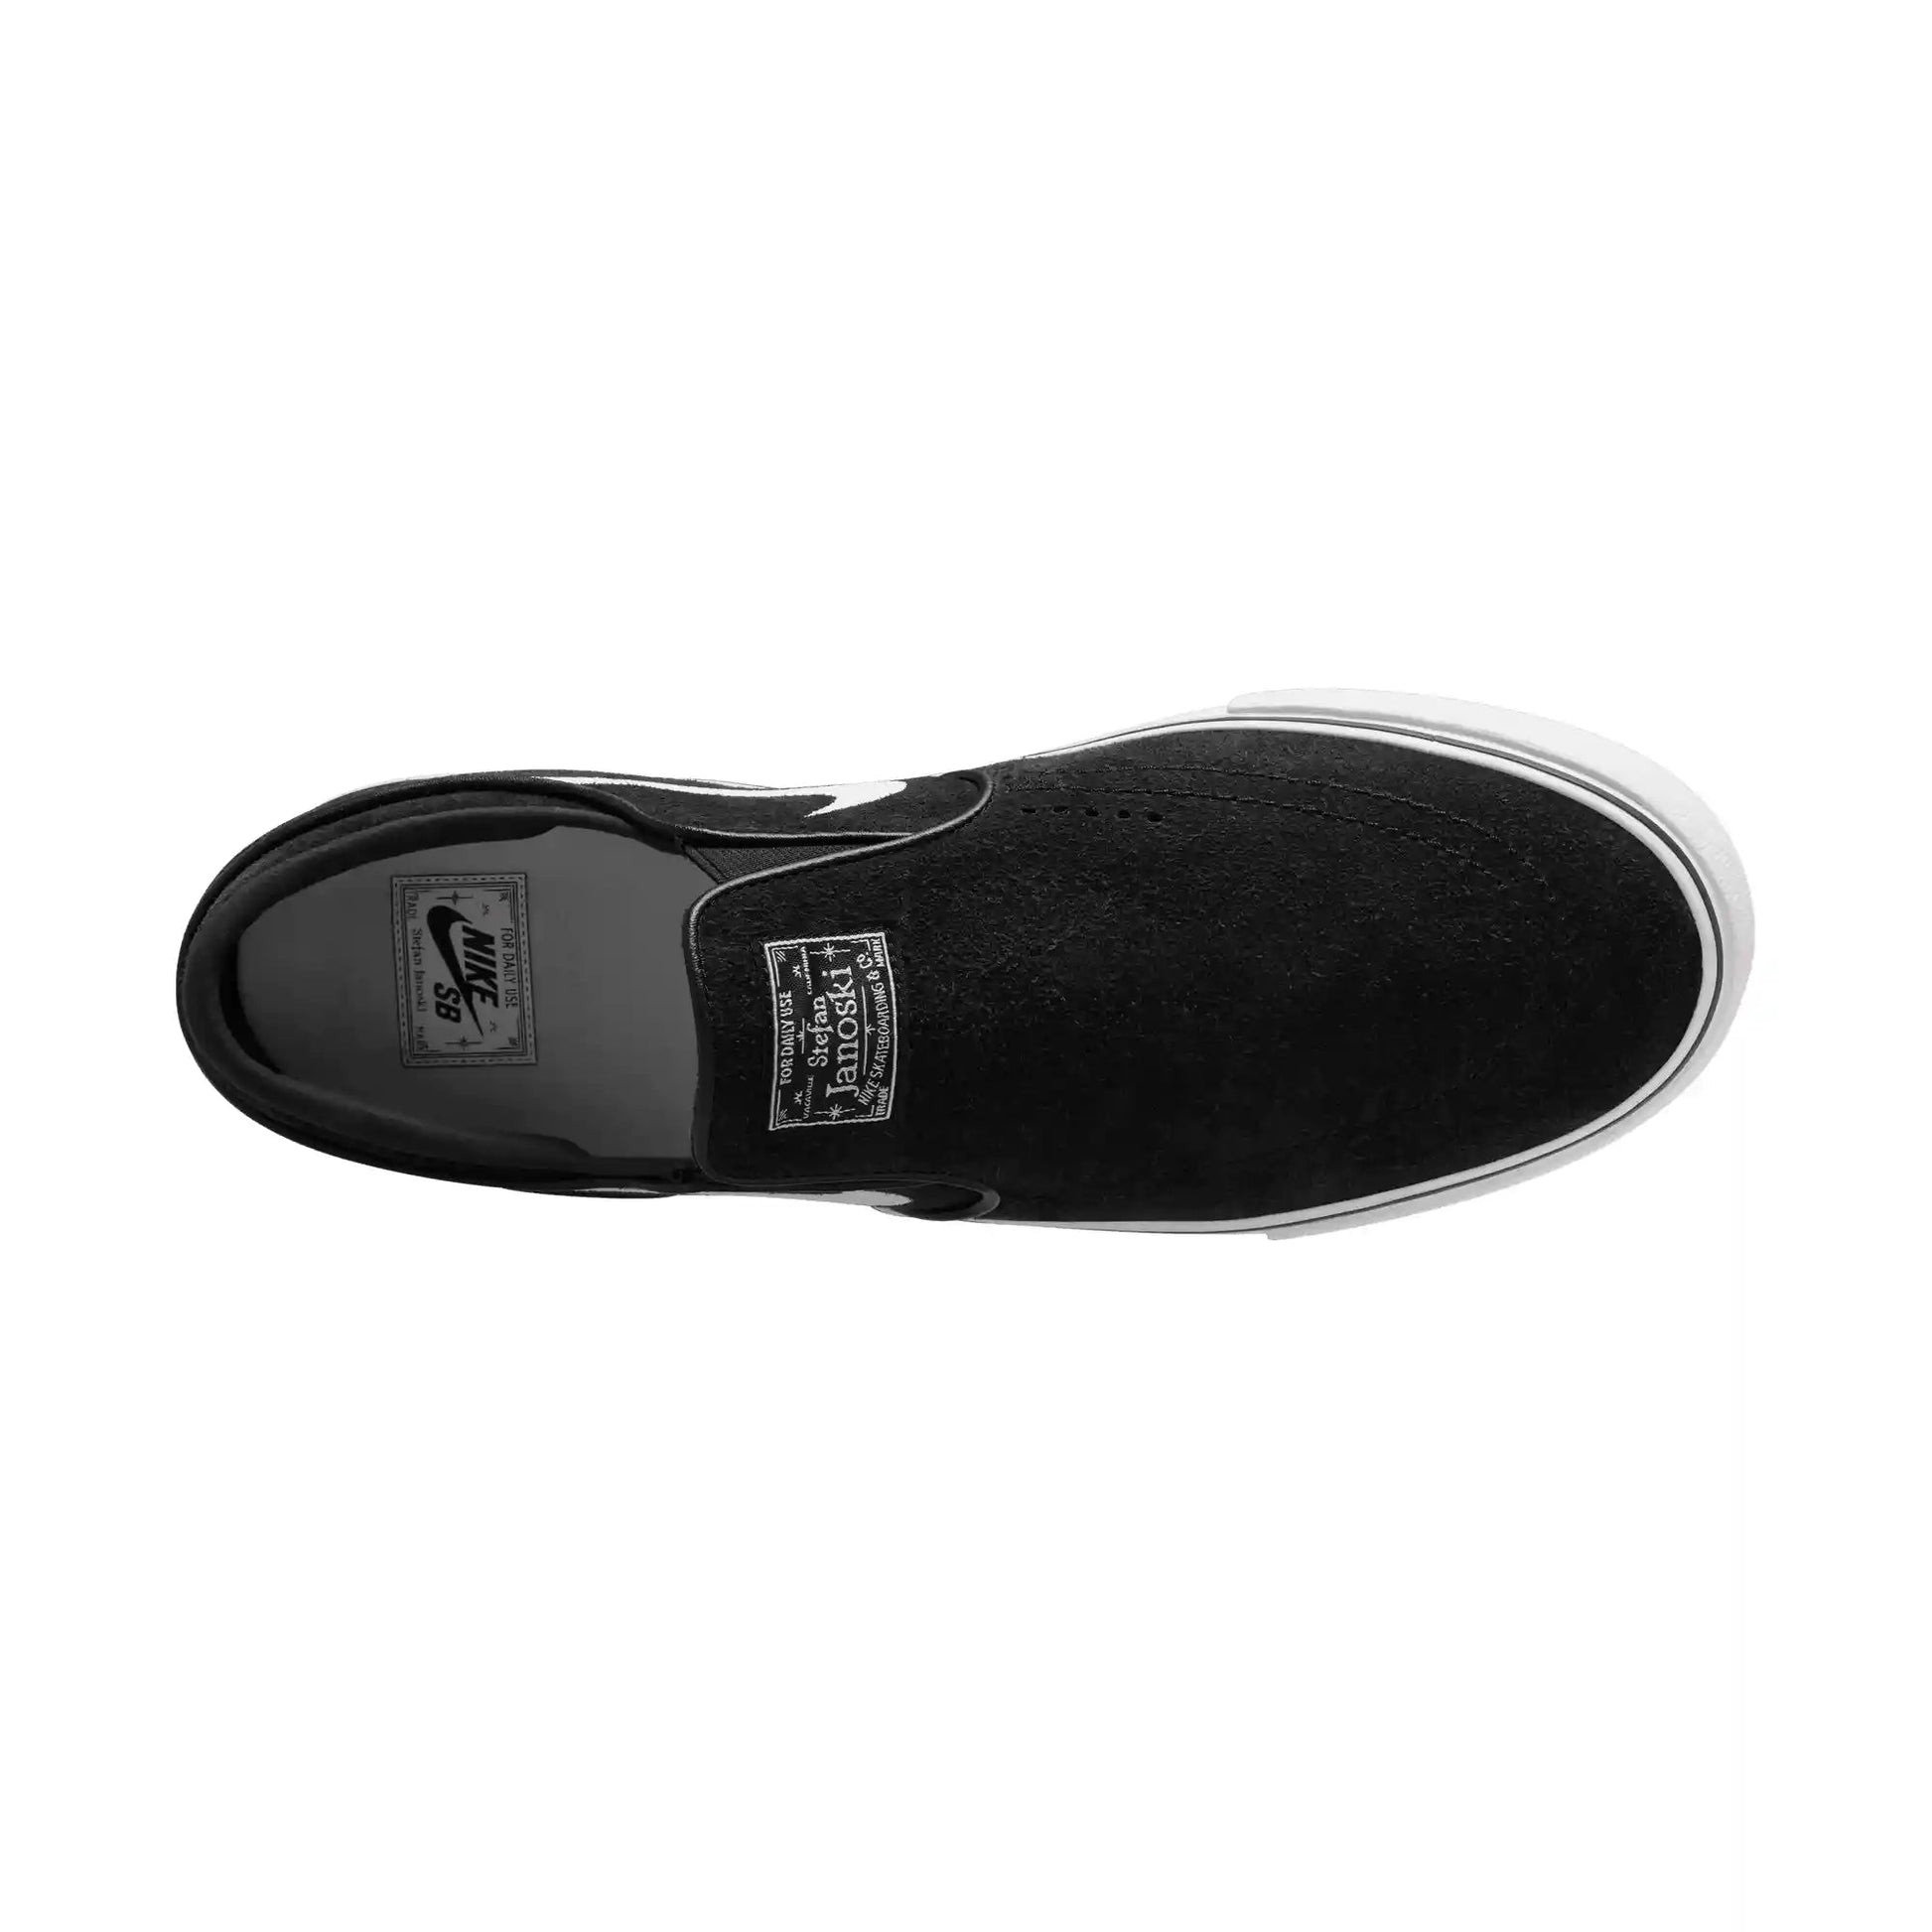 Nike SB Janoski+ Slip, black/white-black-black - Tiki Room Skateboards - 10